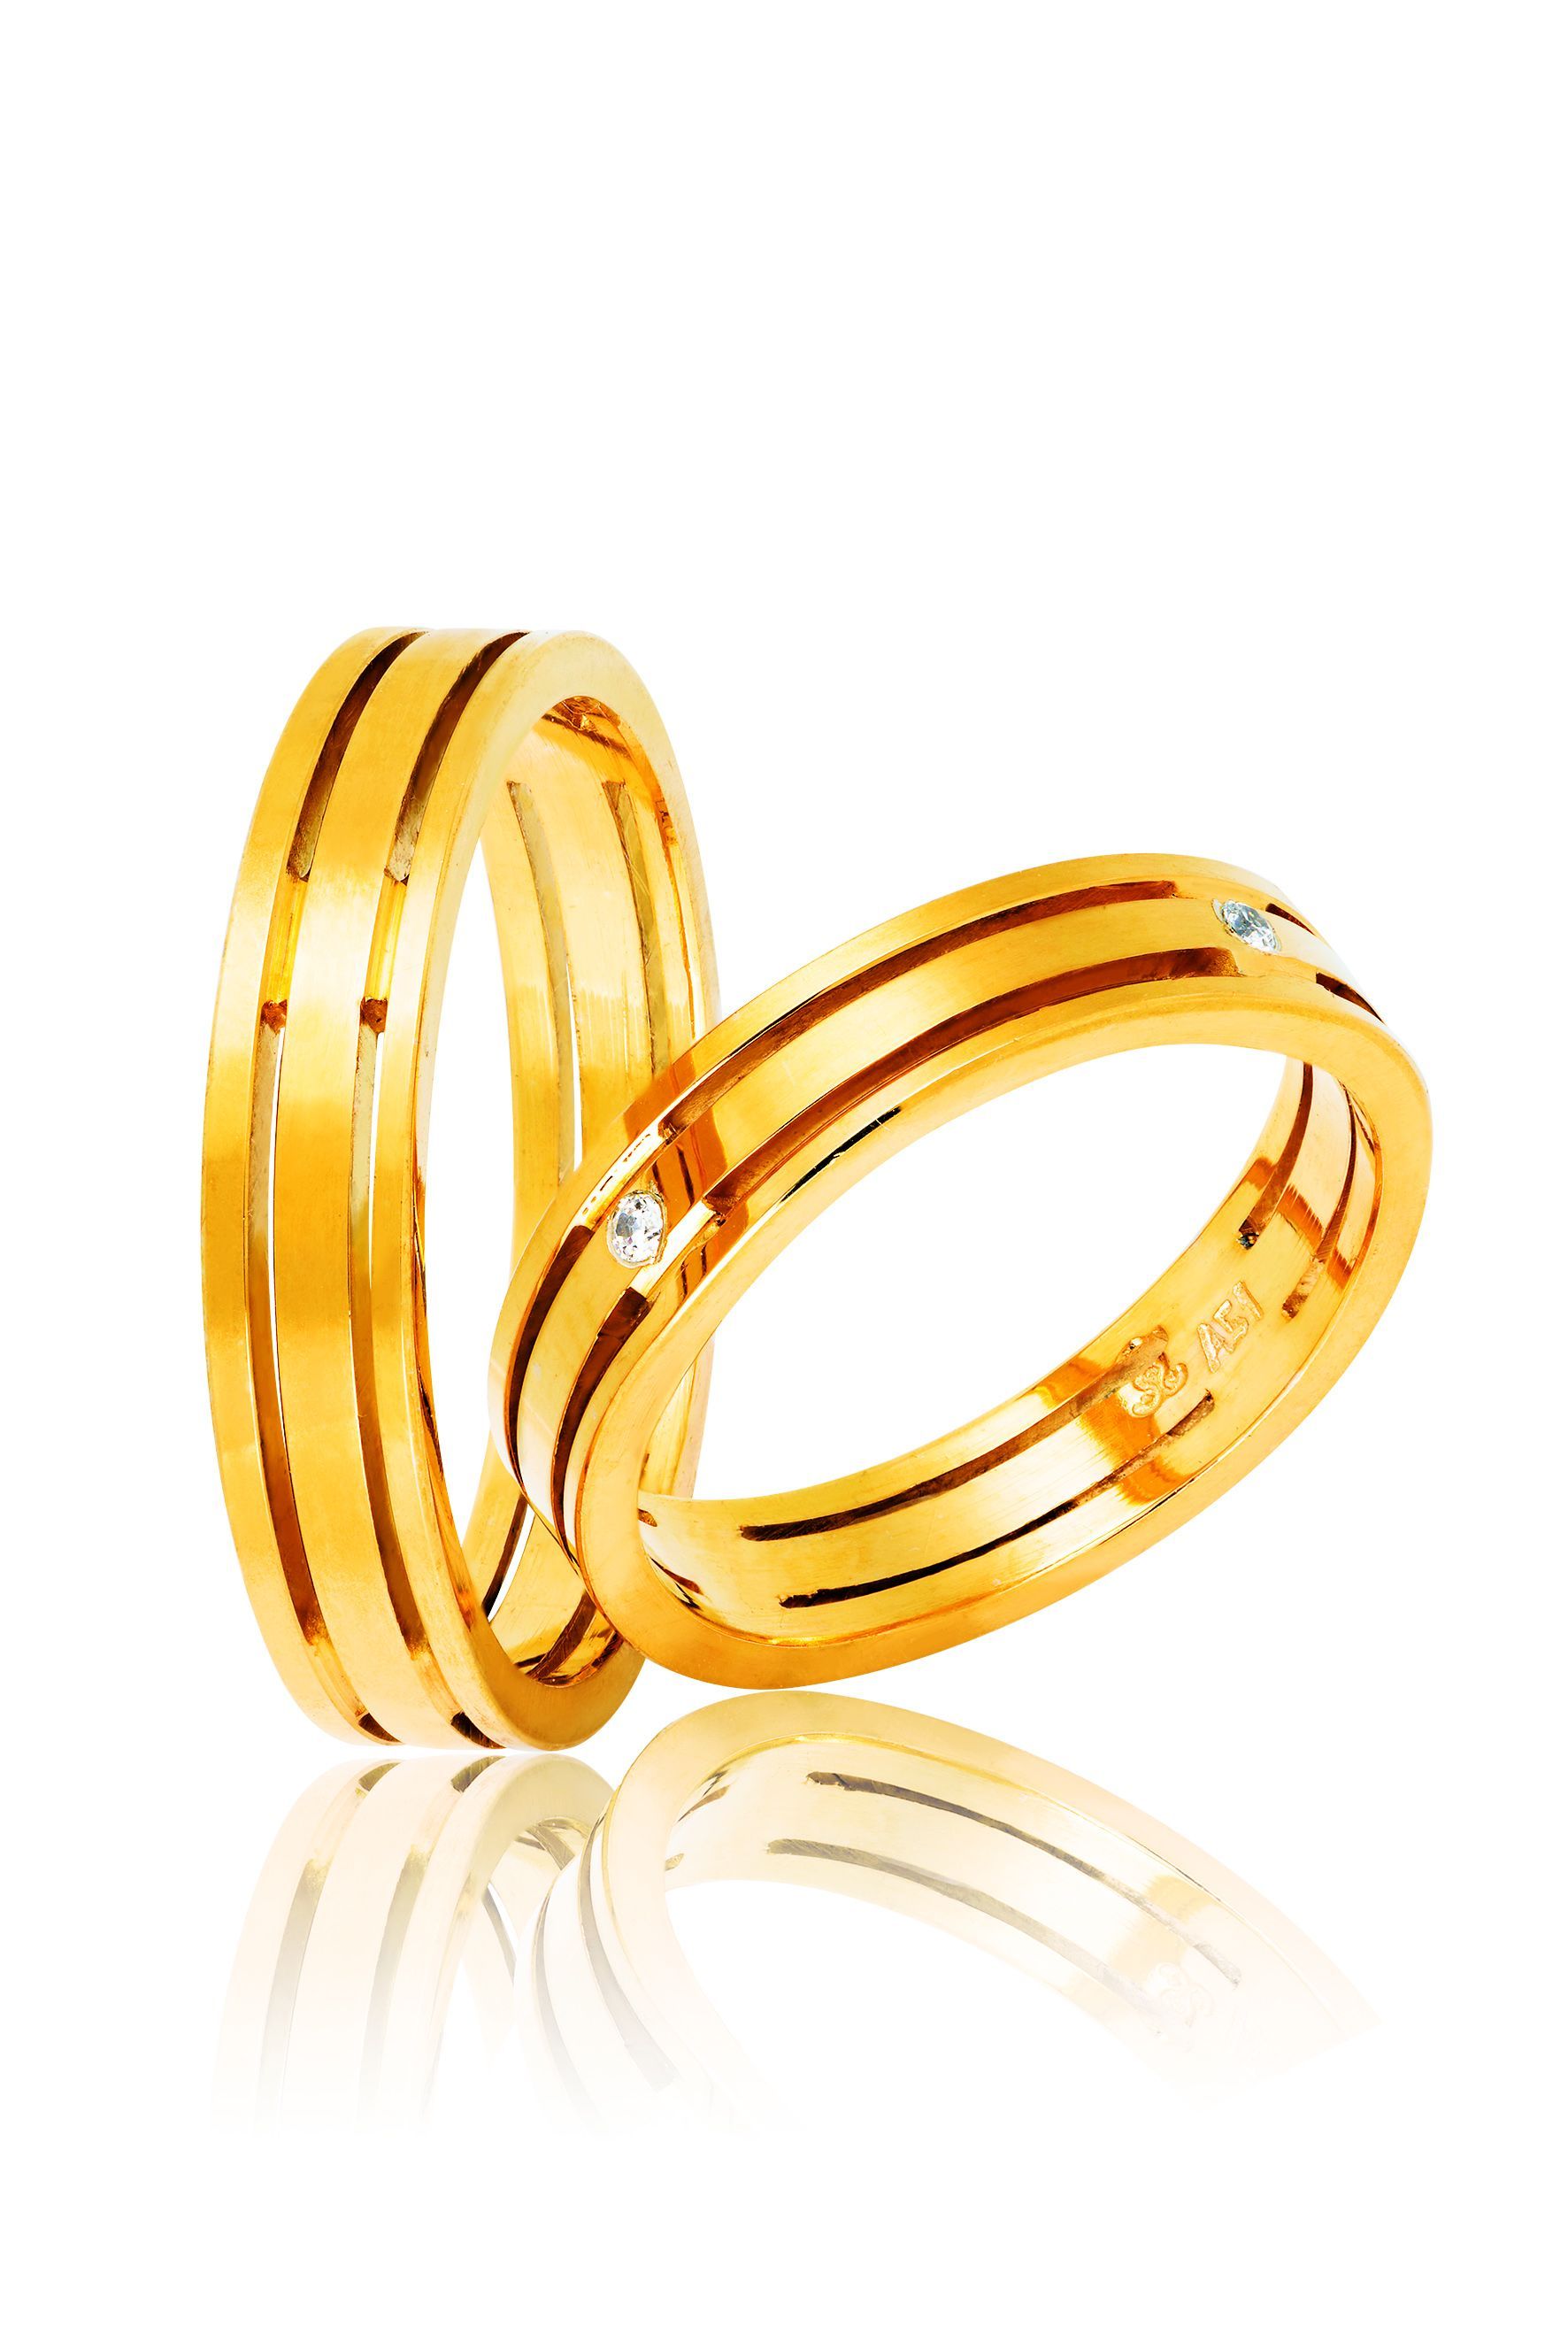 Golden wedding rings 4mm (code 2y)